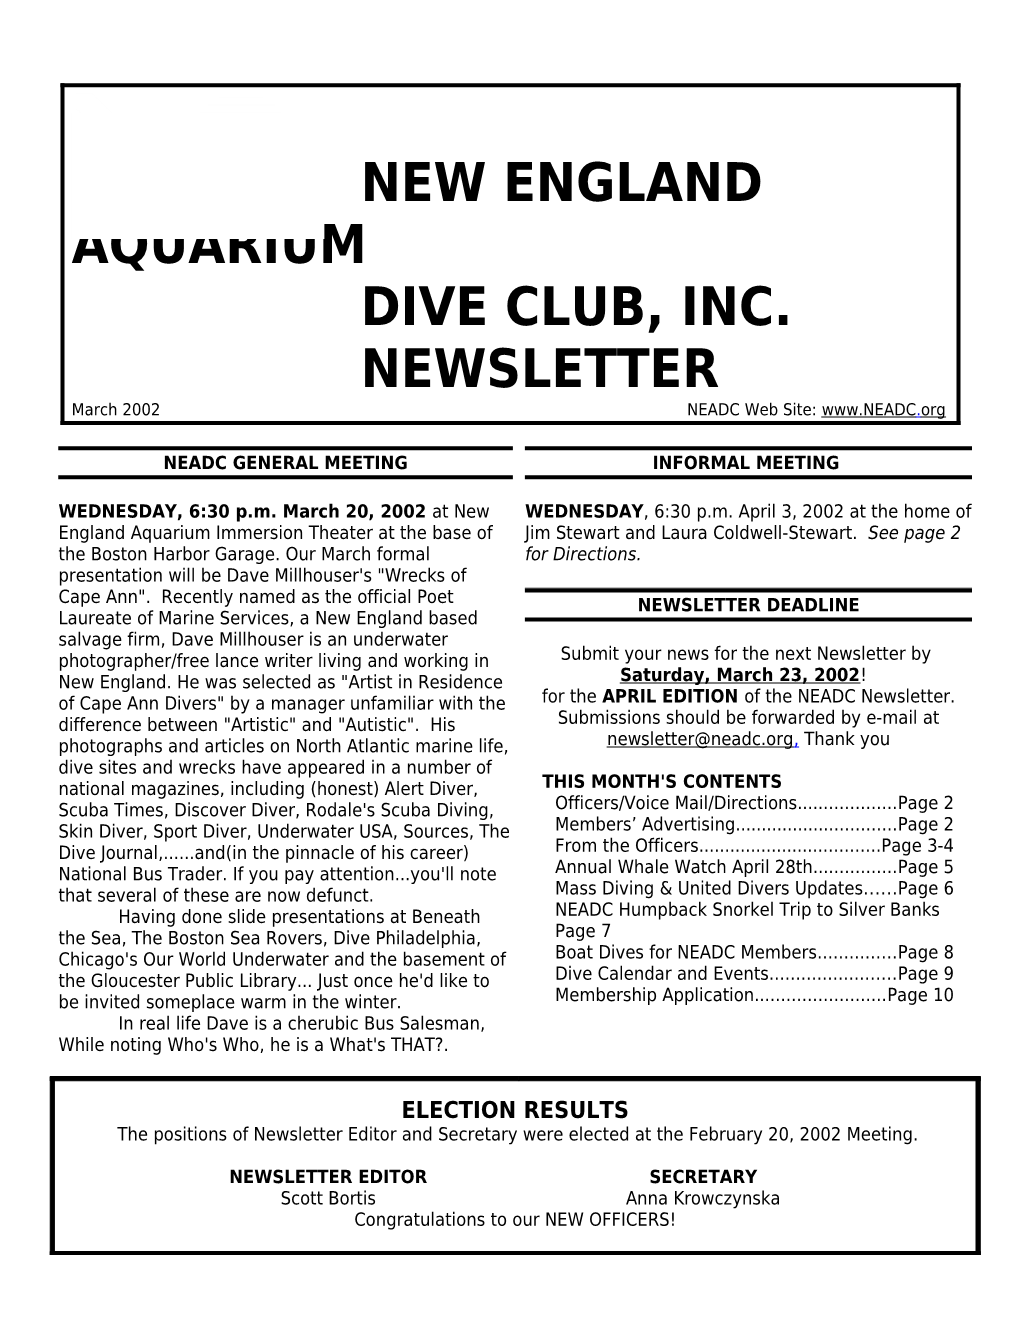 New England Aquarium Dive Club, Inc